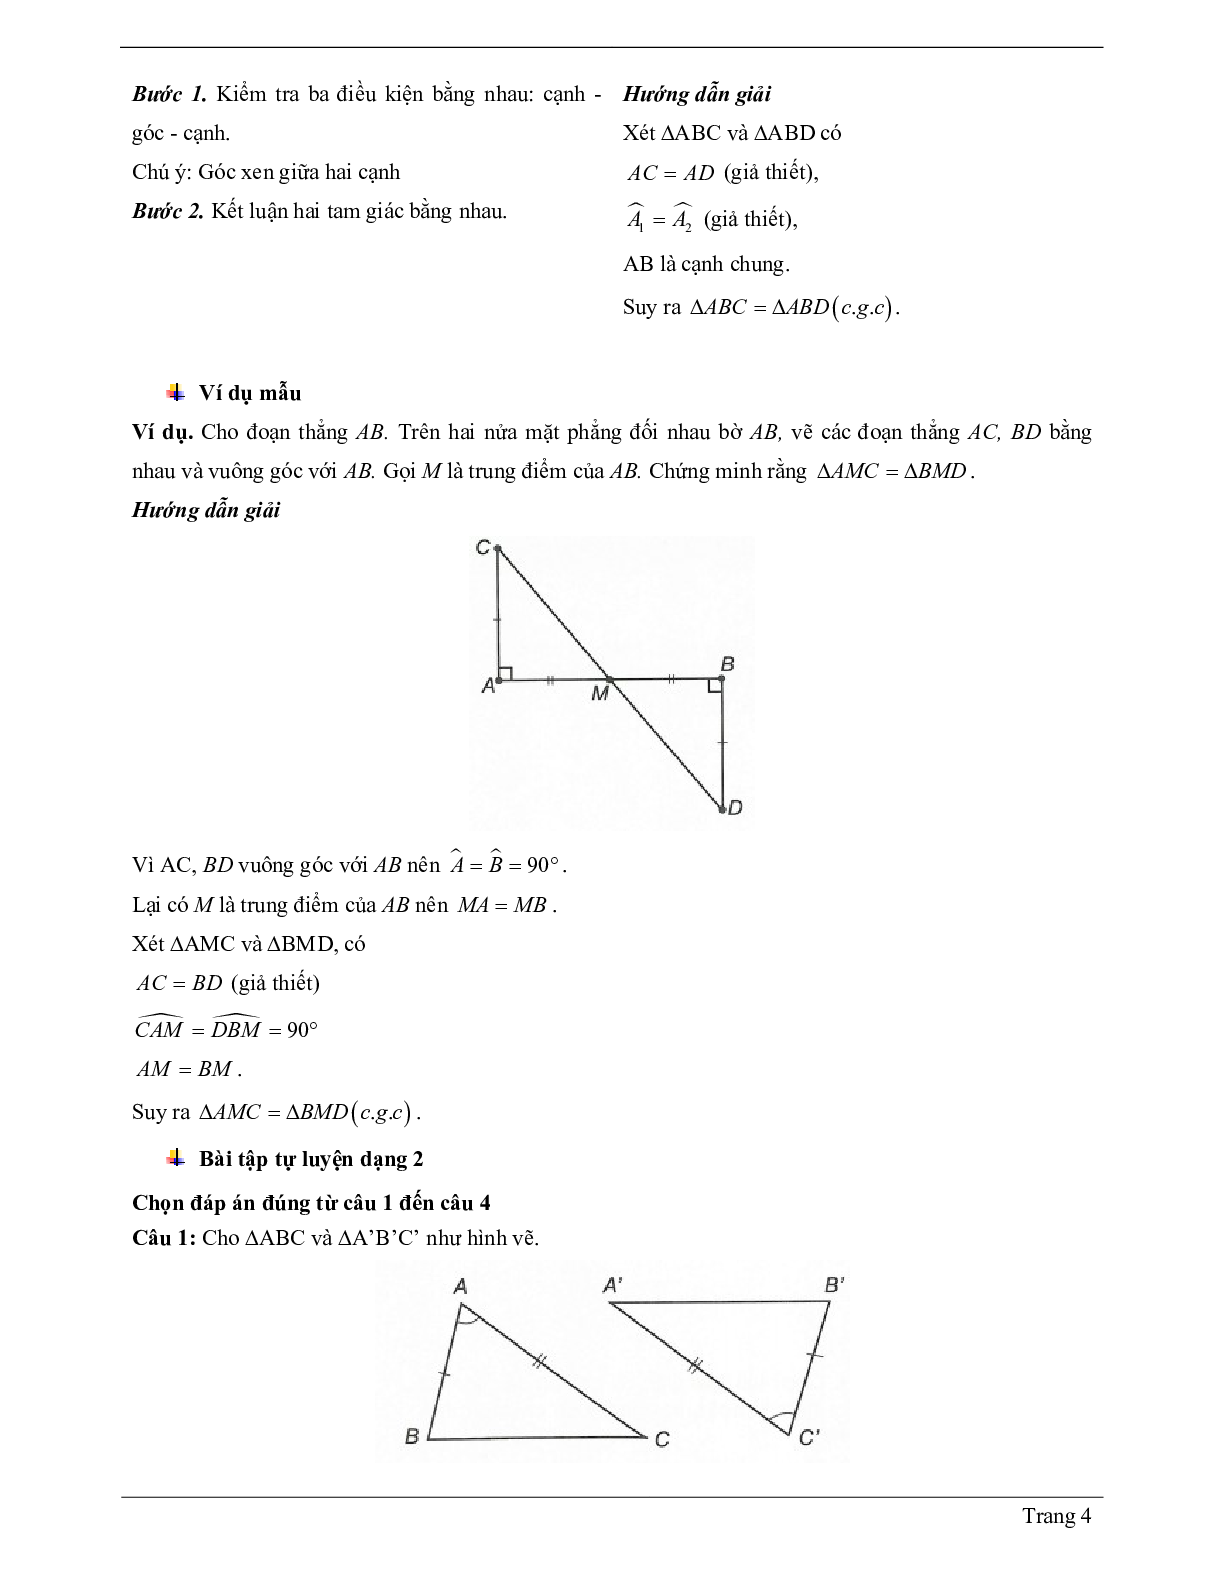 Lý thuyết Toán lớp 7 có đáp án: Trường hợp bằng nhau thứ hai của tam giác: cạnh - góc - cạnh (c.g.c) (trang 4)